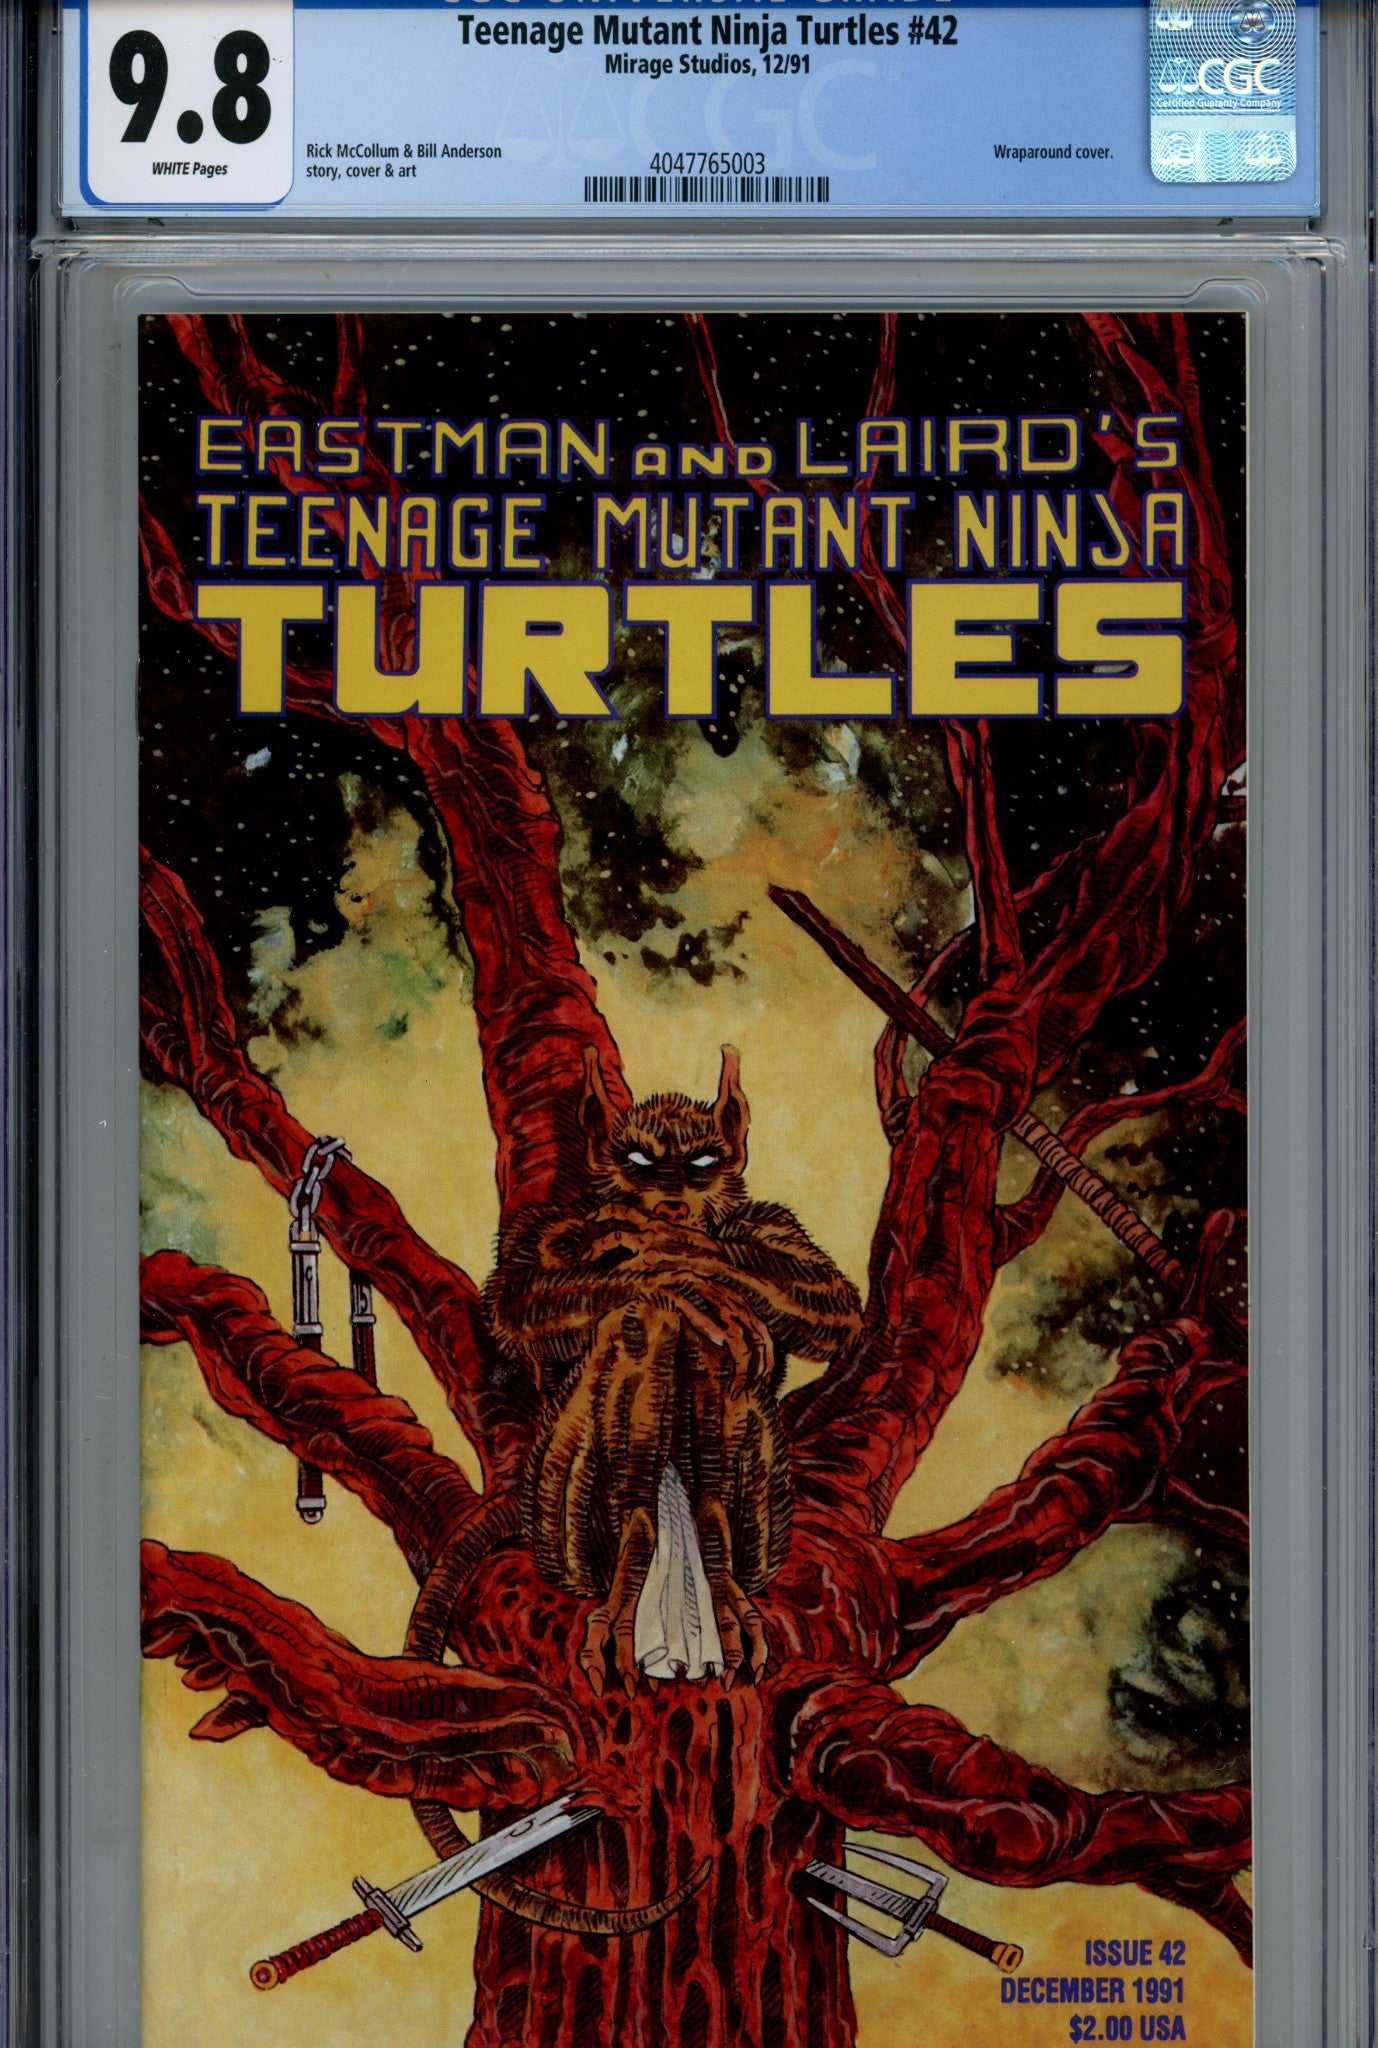 Teenage Mutant Ninja Turtles Vol 1 42 CGC 9.8 (1991)